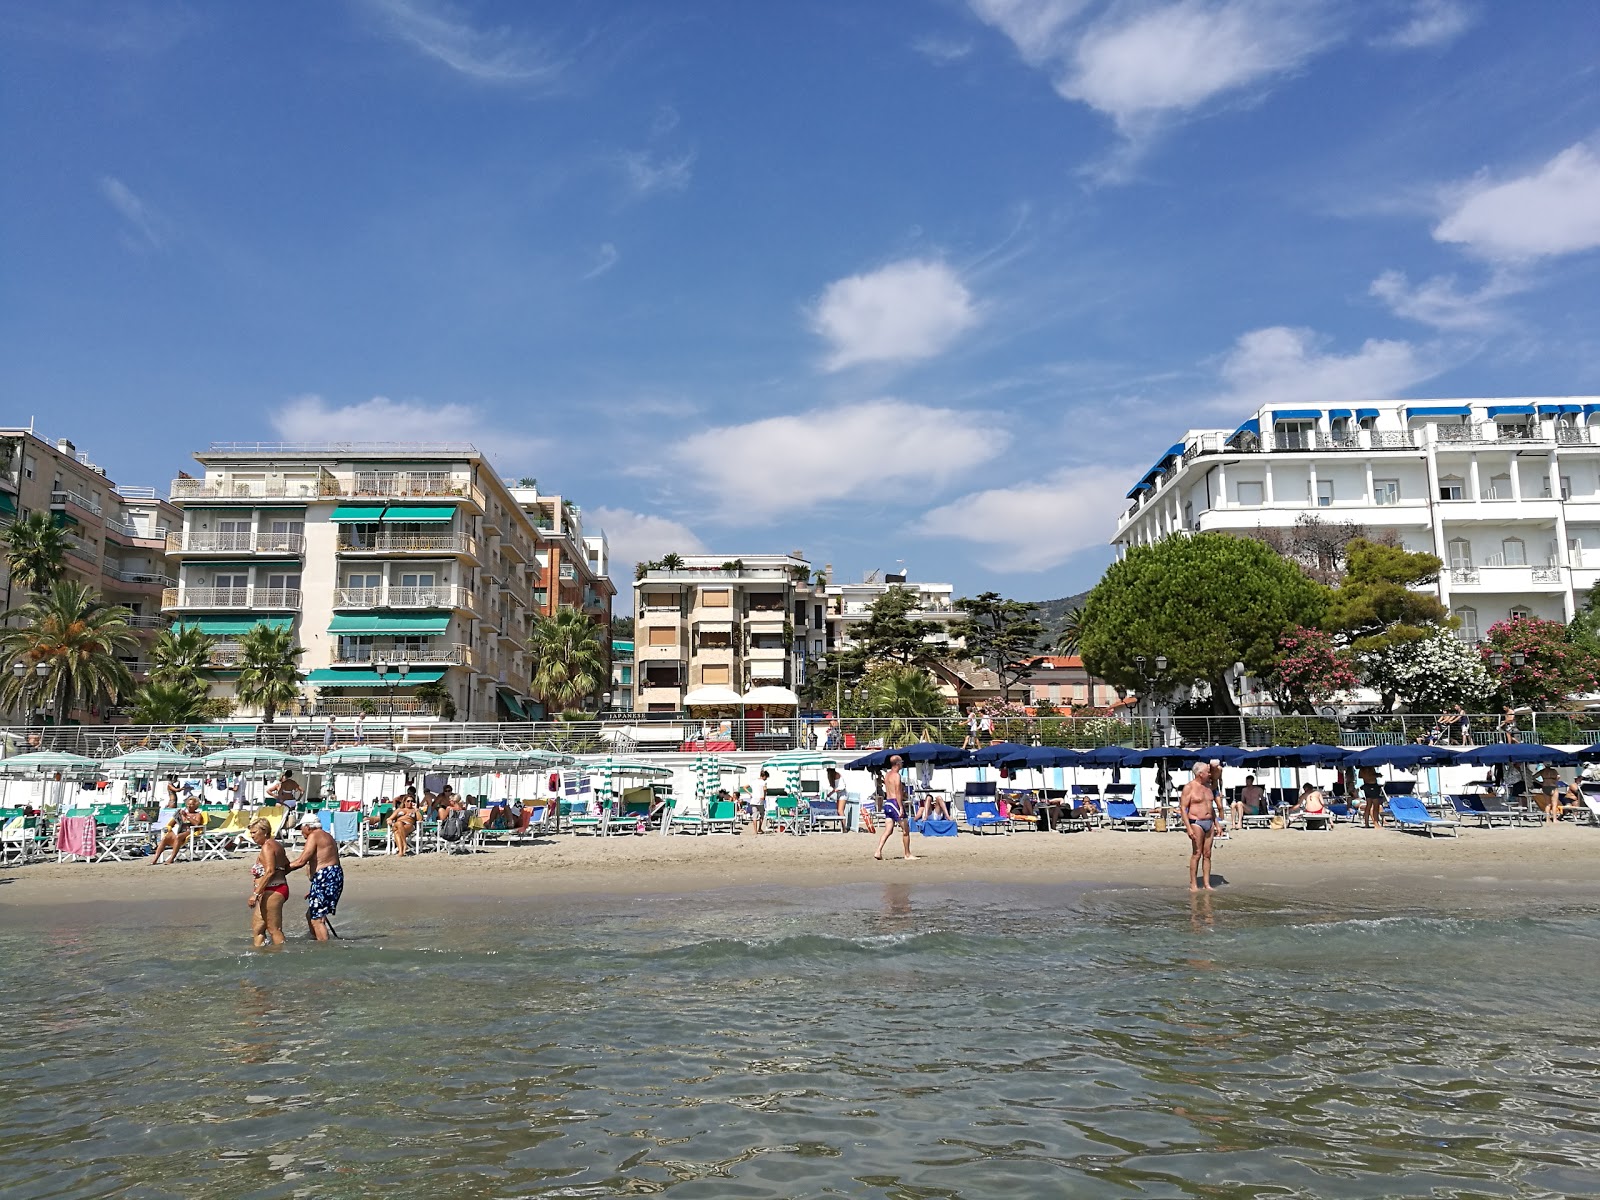 Fotografie cu Spiaggia Attrezzata și așezarea